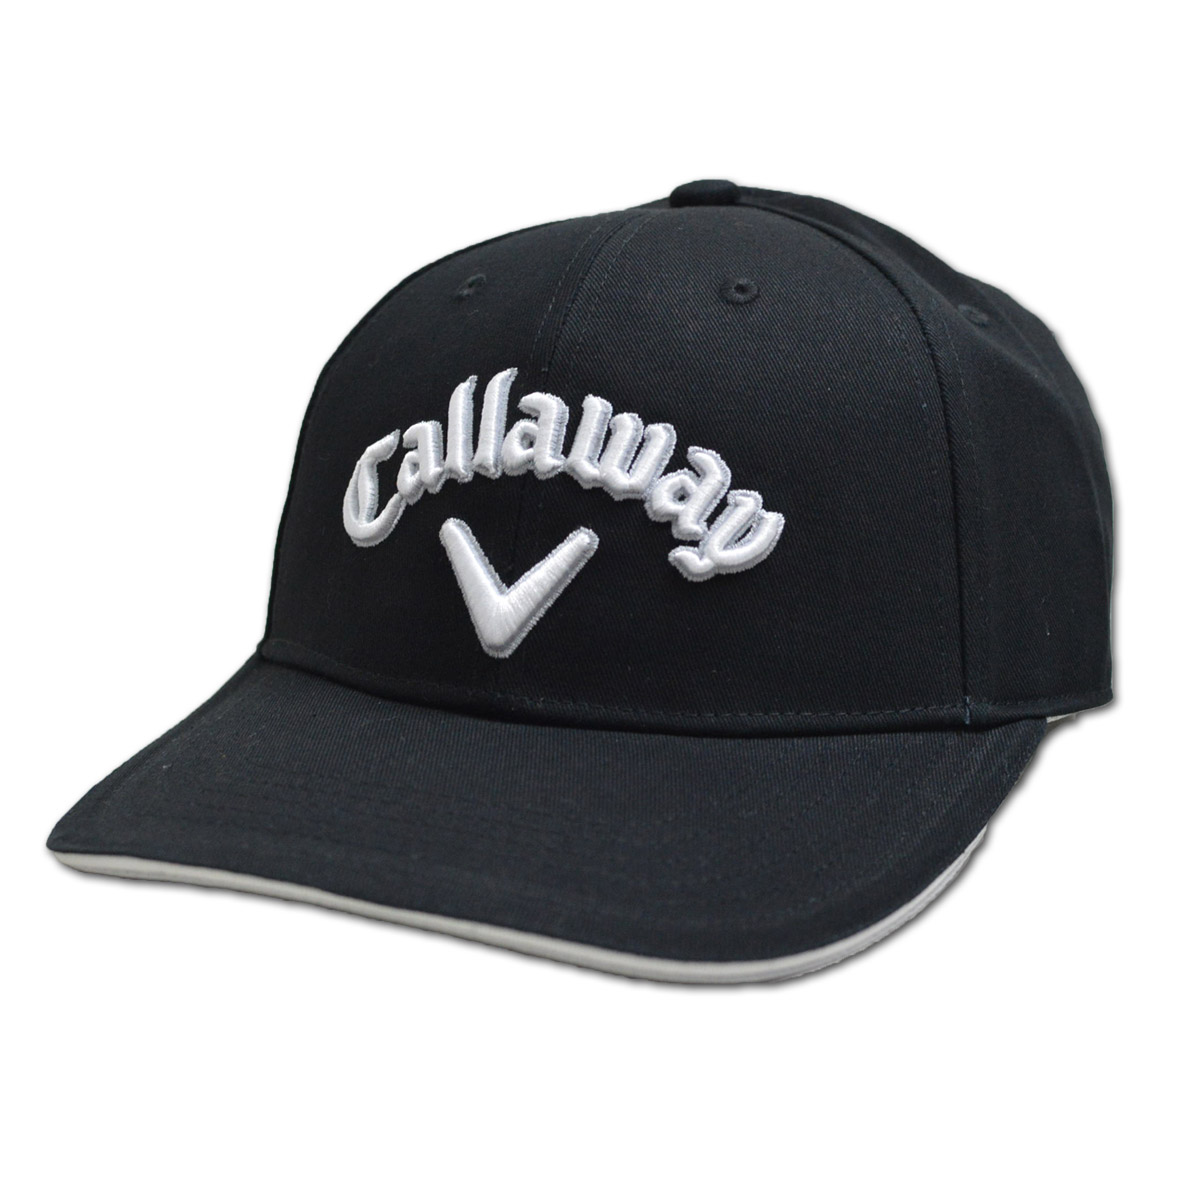 キャロウェイ キャップ帽子 メンズ 黒 白 紺 グレー c23990104